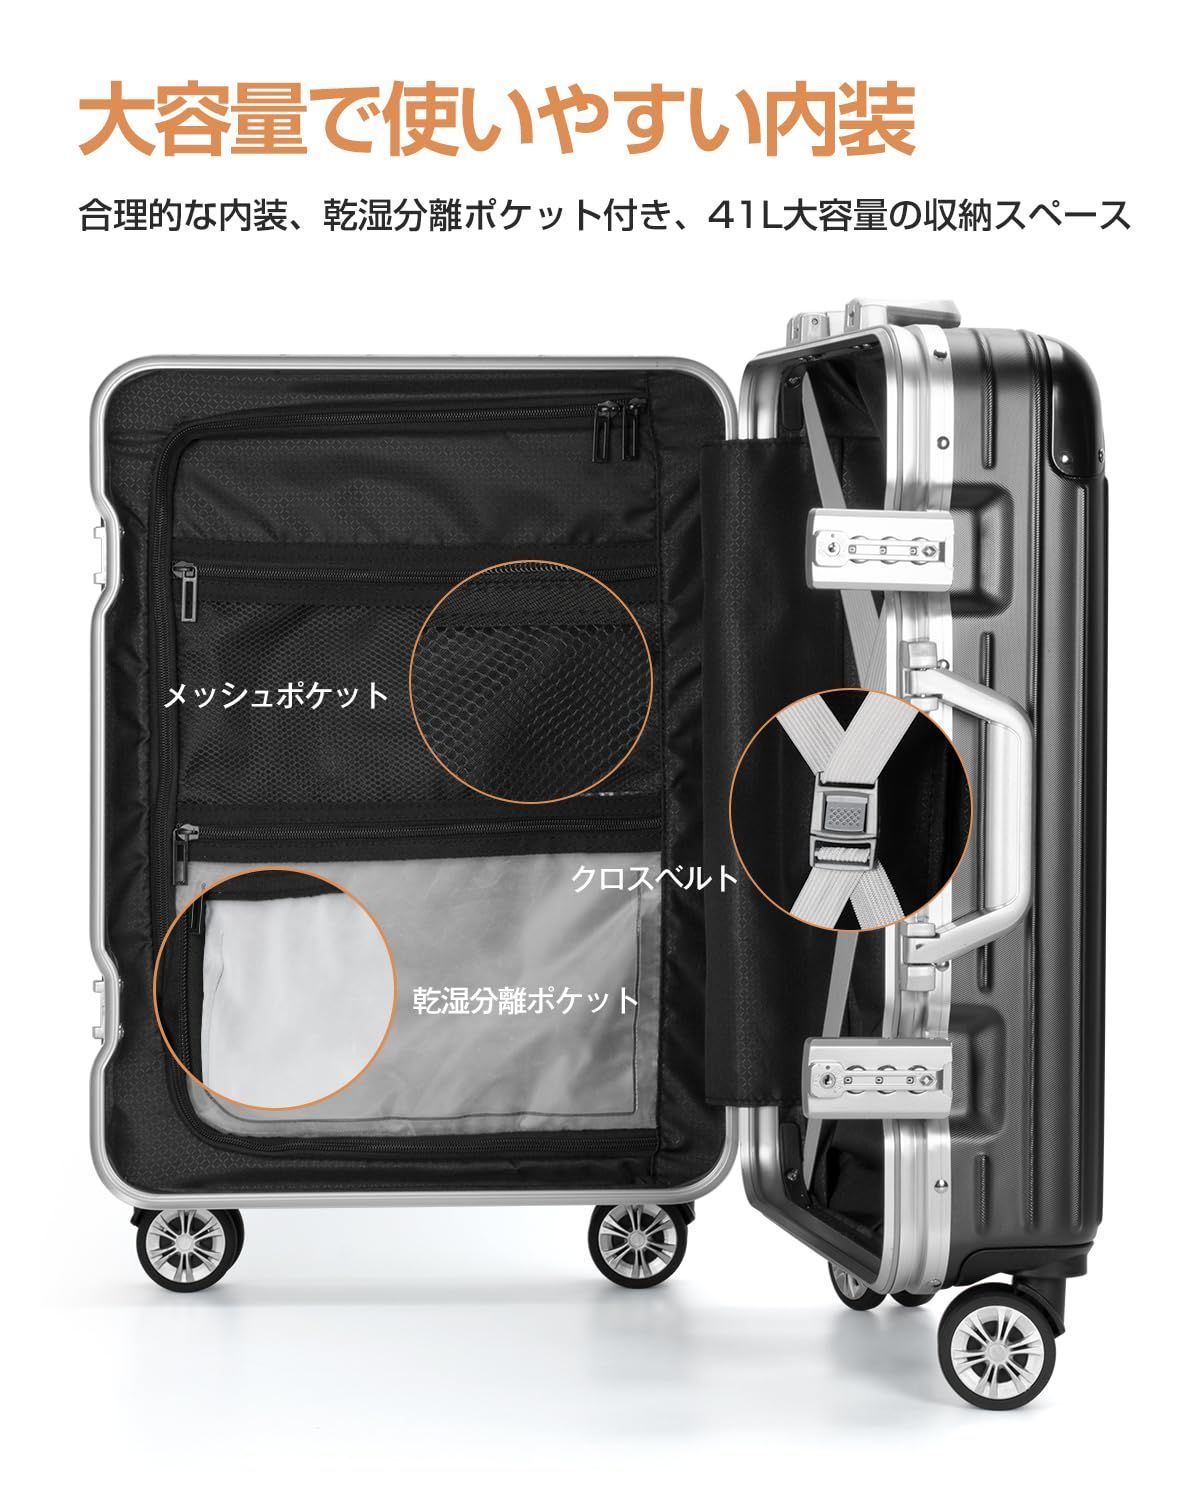 【色: ブラック】ANYCOOL スーツケース キャリーケース 超軽量 大容量約408kg付属品含まず容量